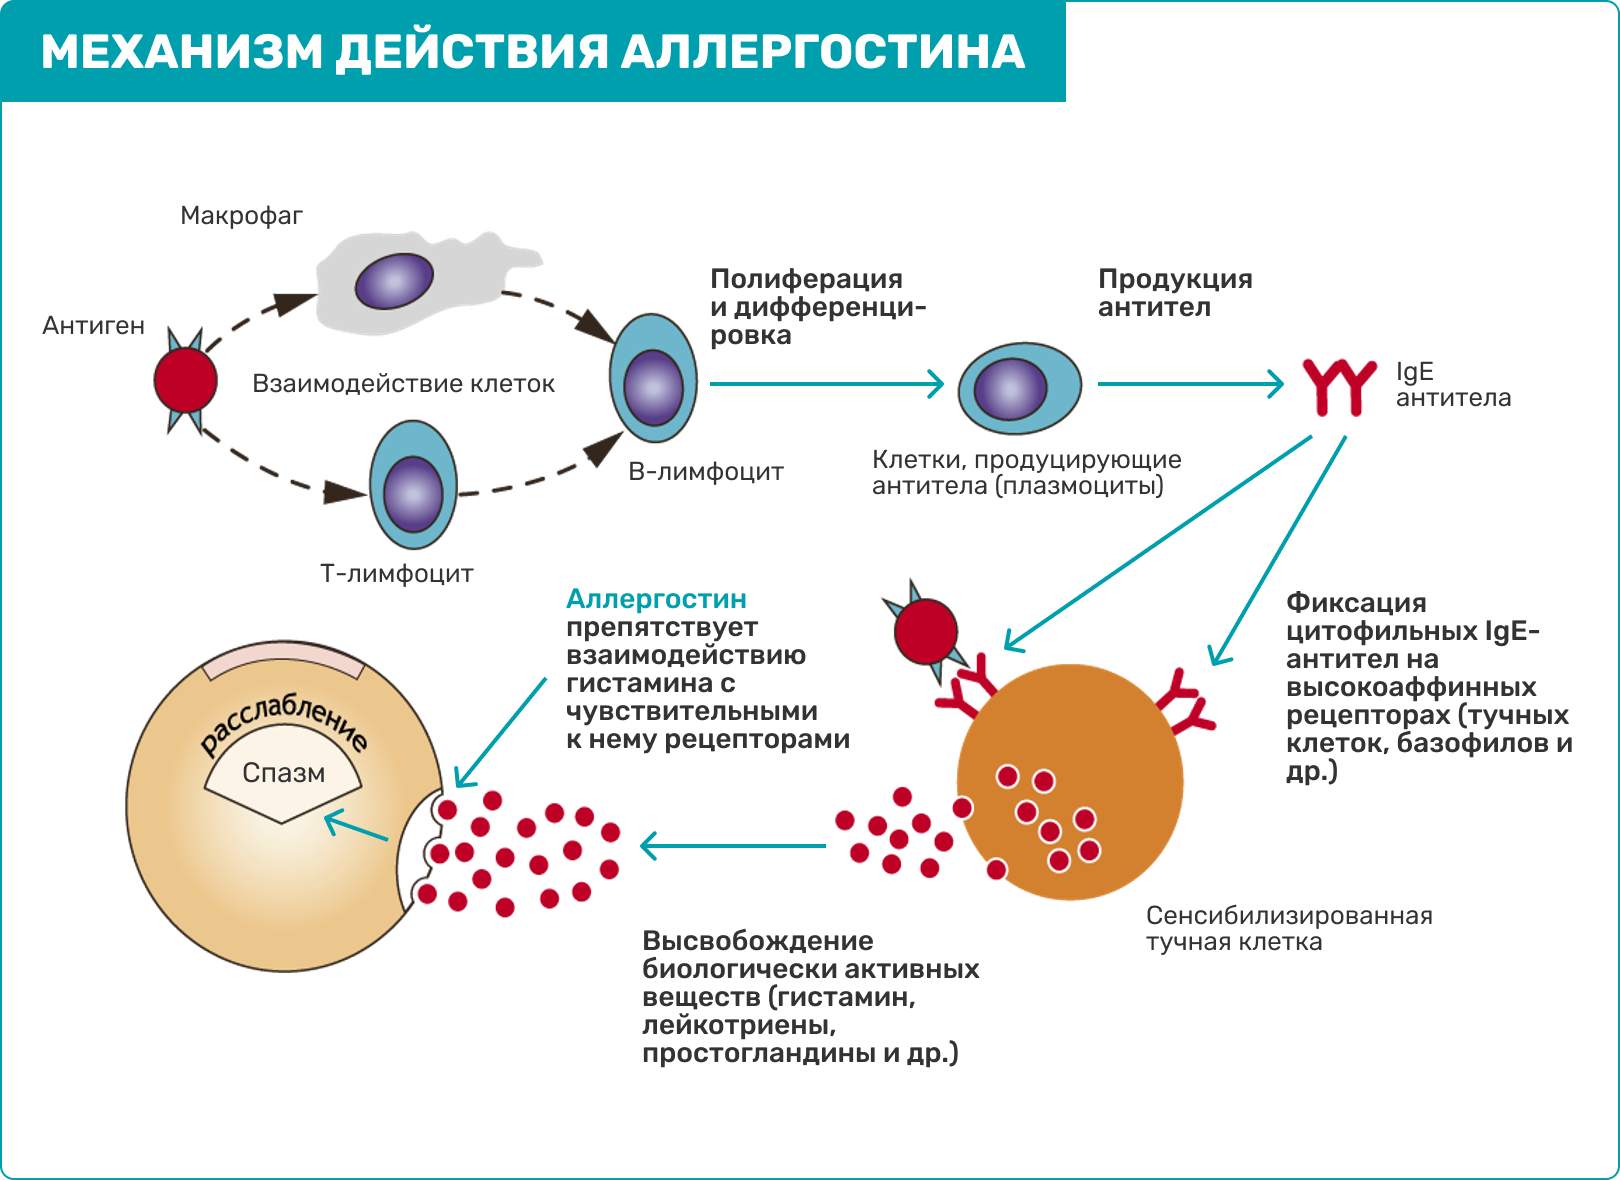 Аллергостин аналоги. Патогенез поллиноза. Аллергостин. Схема лечения поллиноза. Гистаминовый комплекс.